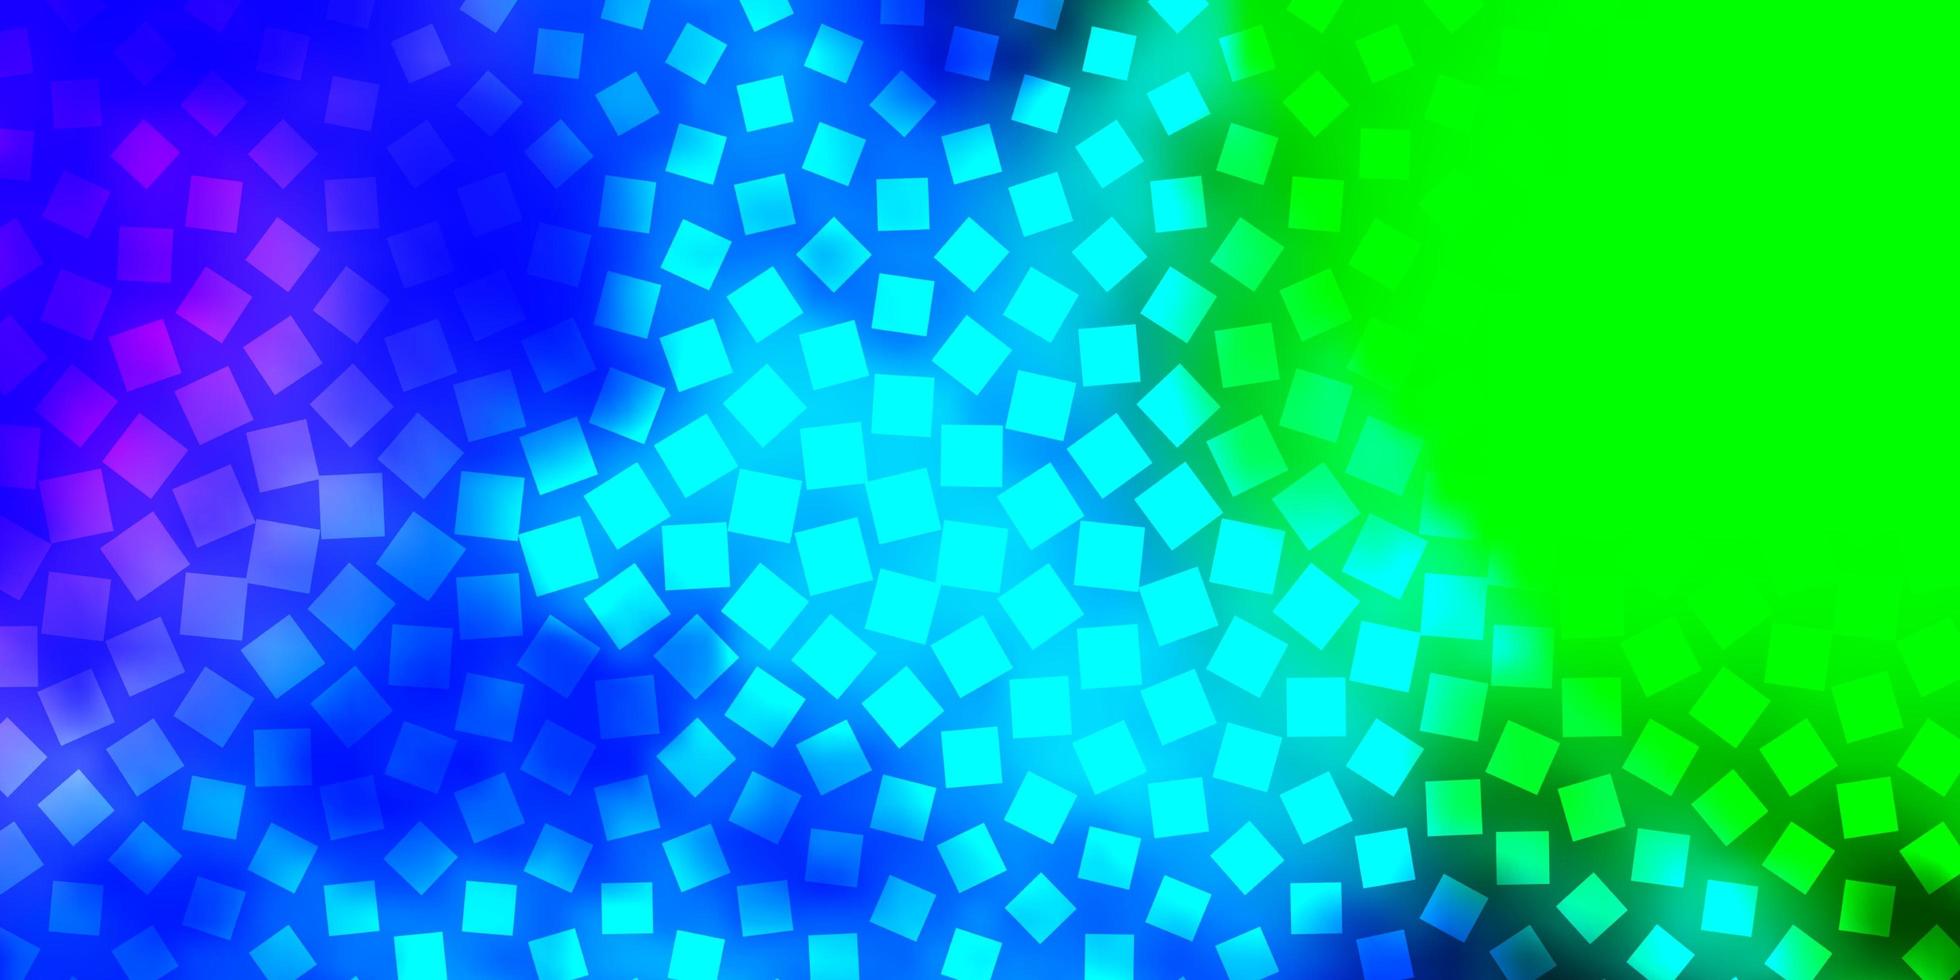 patrón de vector azul claro, verde en estilo cuadrado. nueva ilustración abstracta con formas rectangulares. patrón para folletos de negocios, folletos